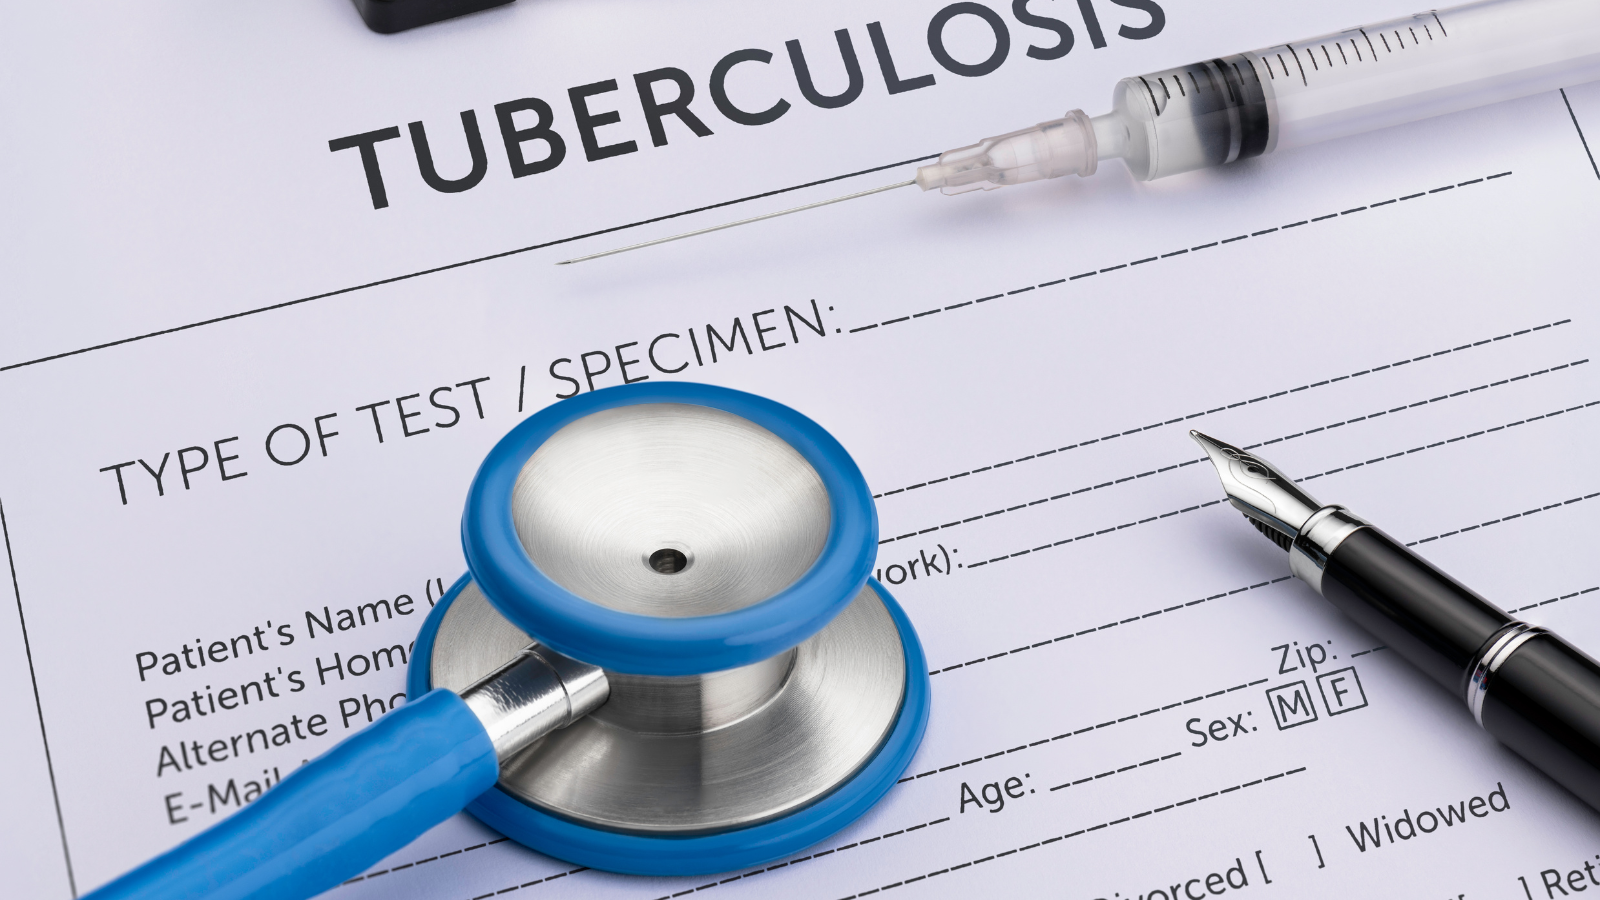 Tuberculosis Program